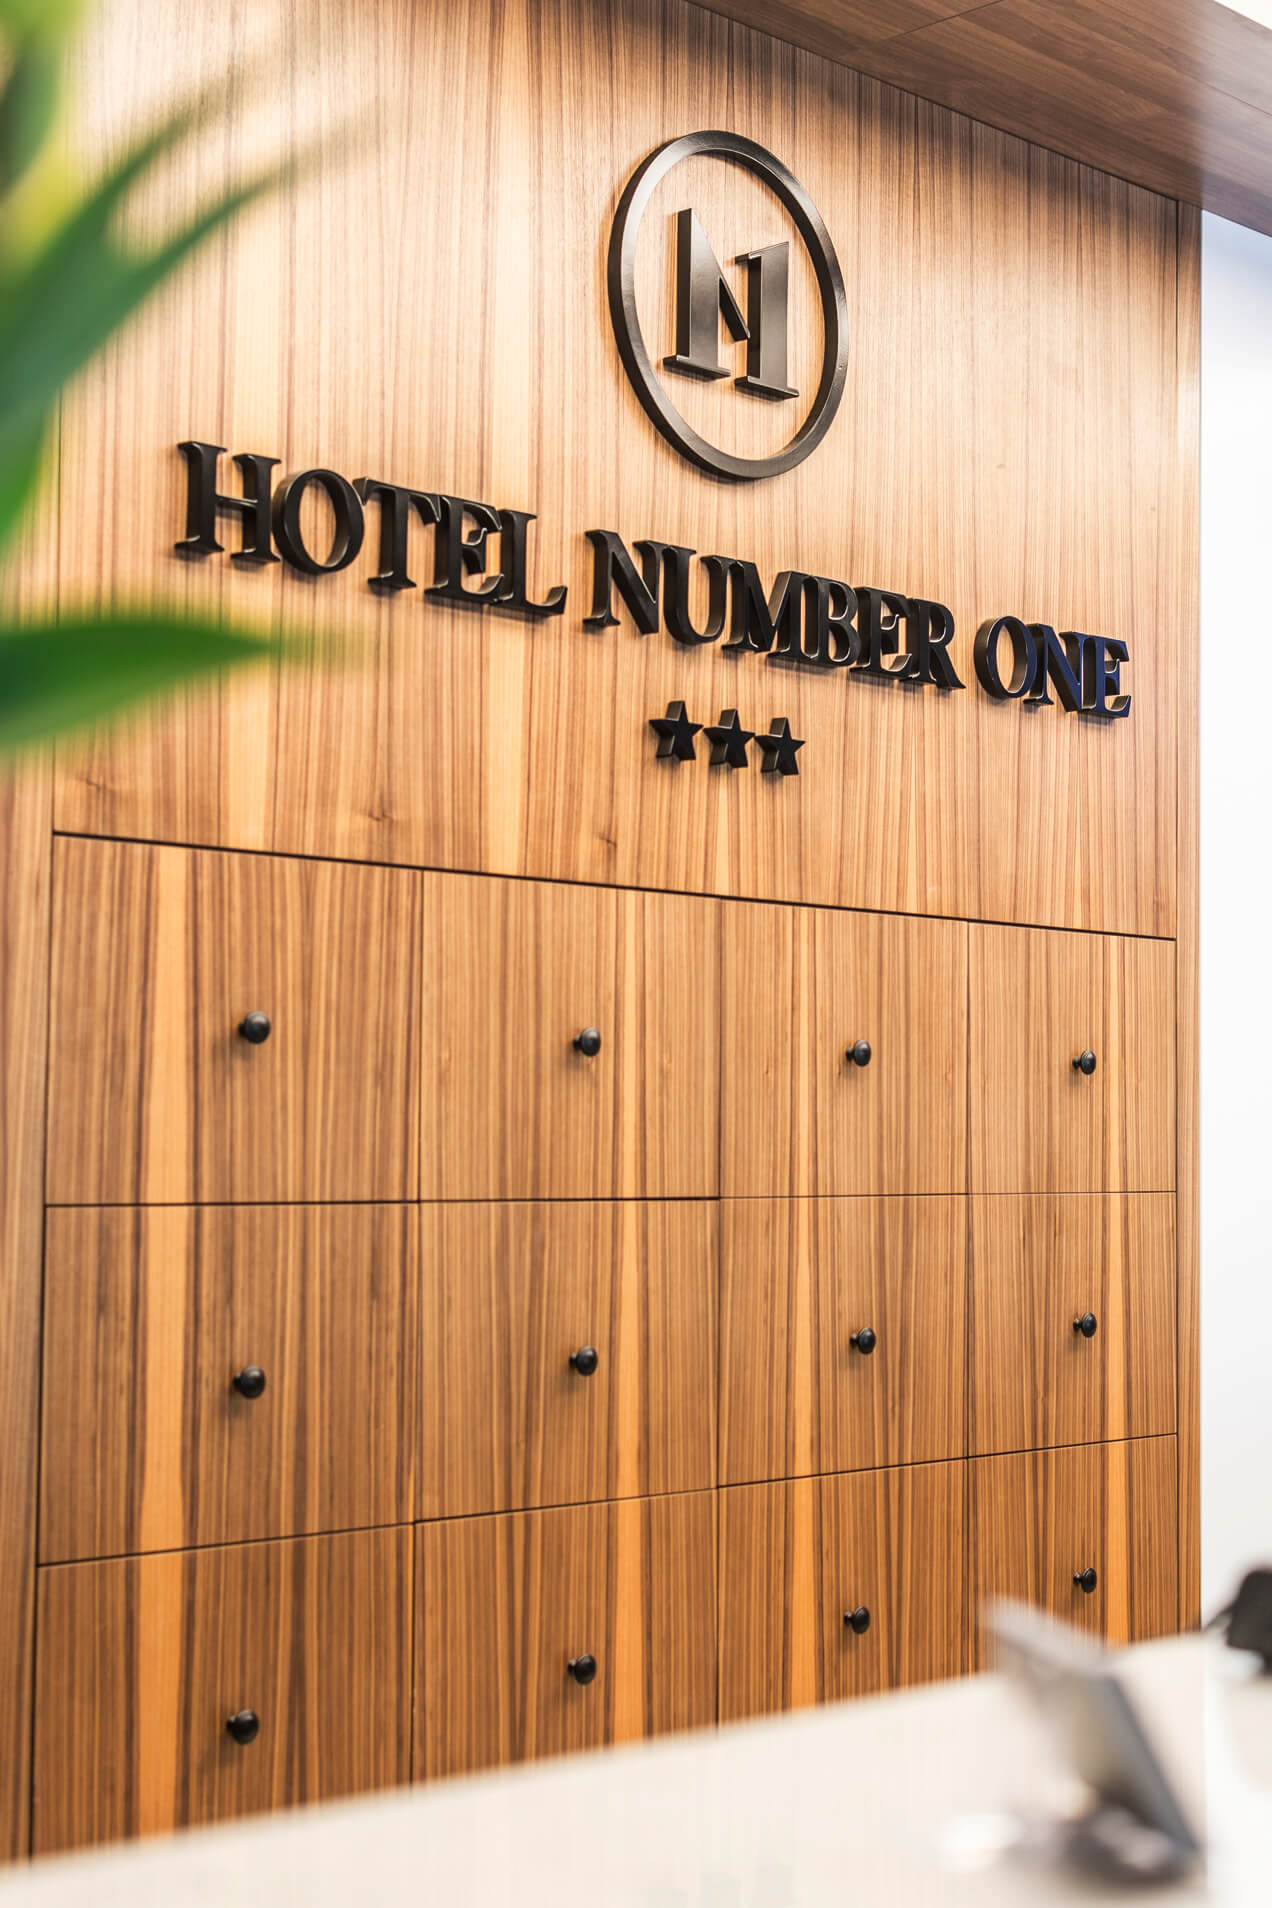 Hotel Number 1 - Hotel Number 1 - logo i litery przestrzenne malowane umieszczone w recepcji hotelu